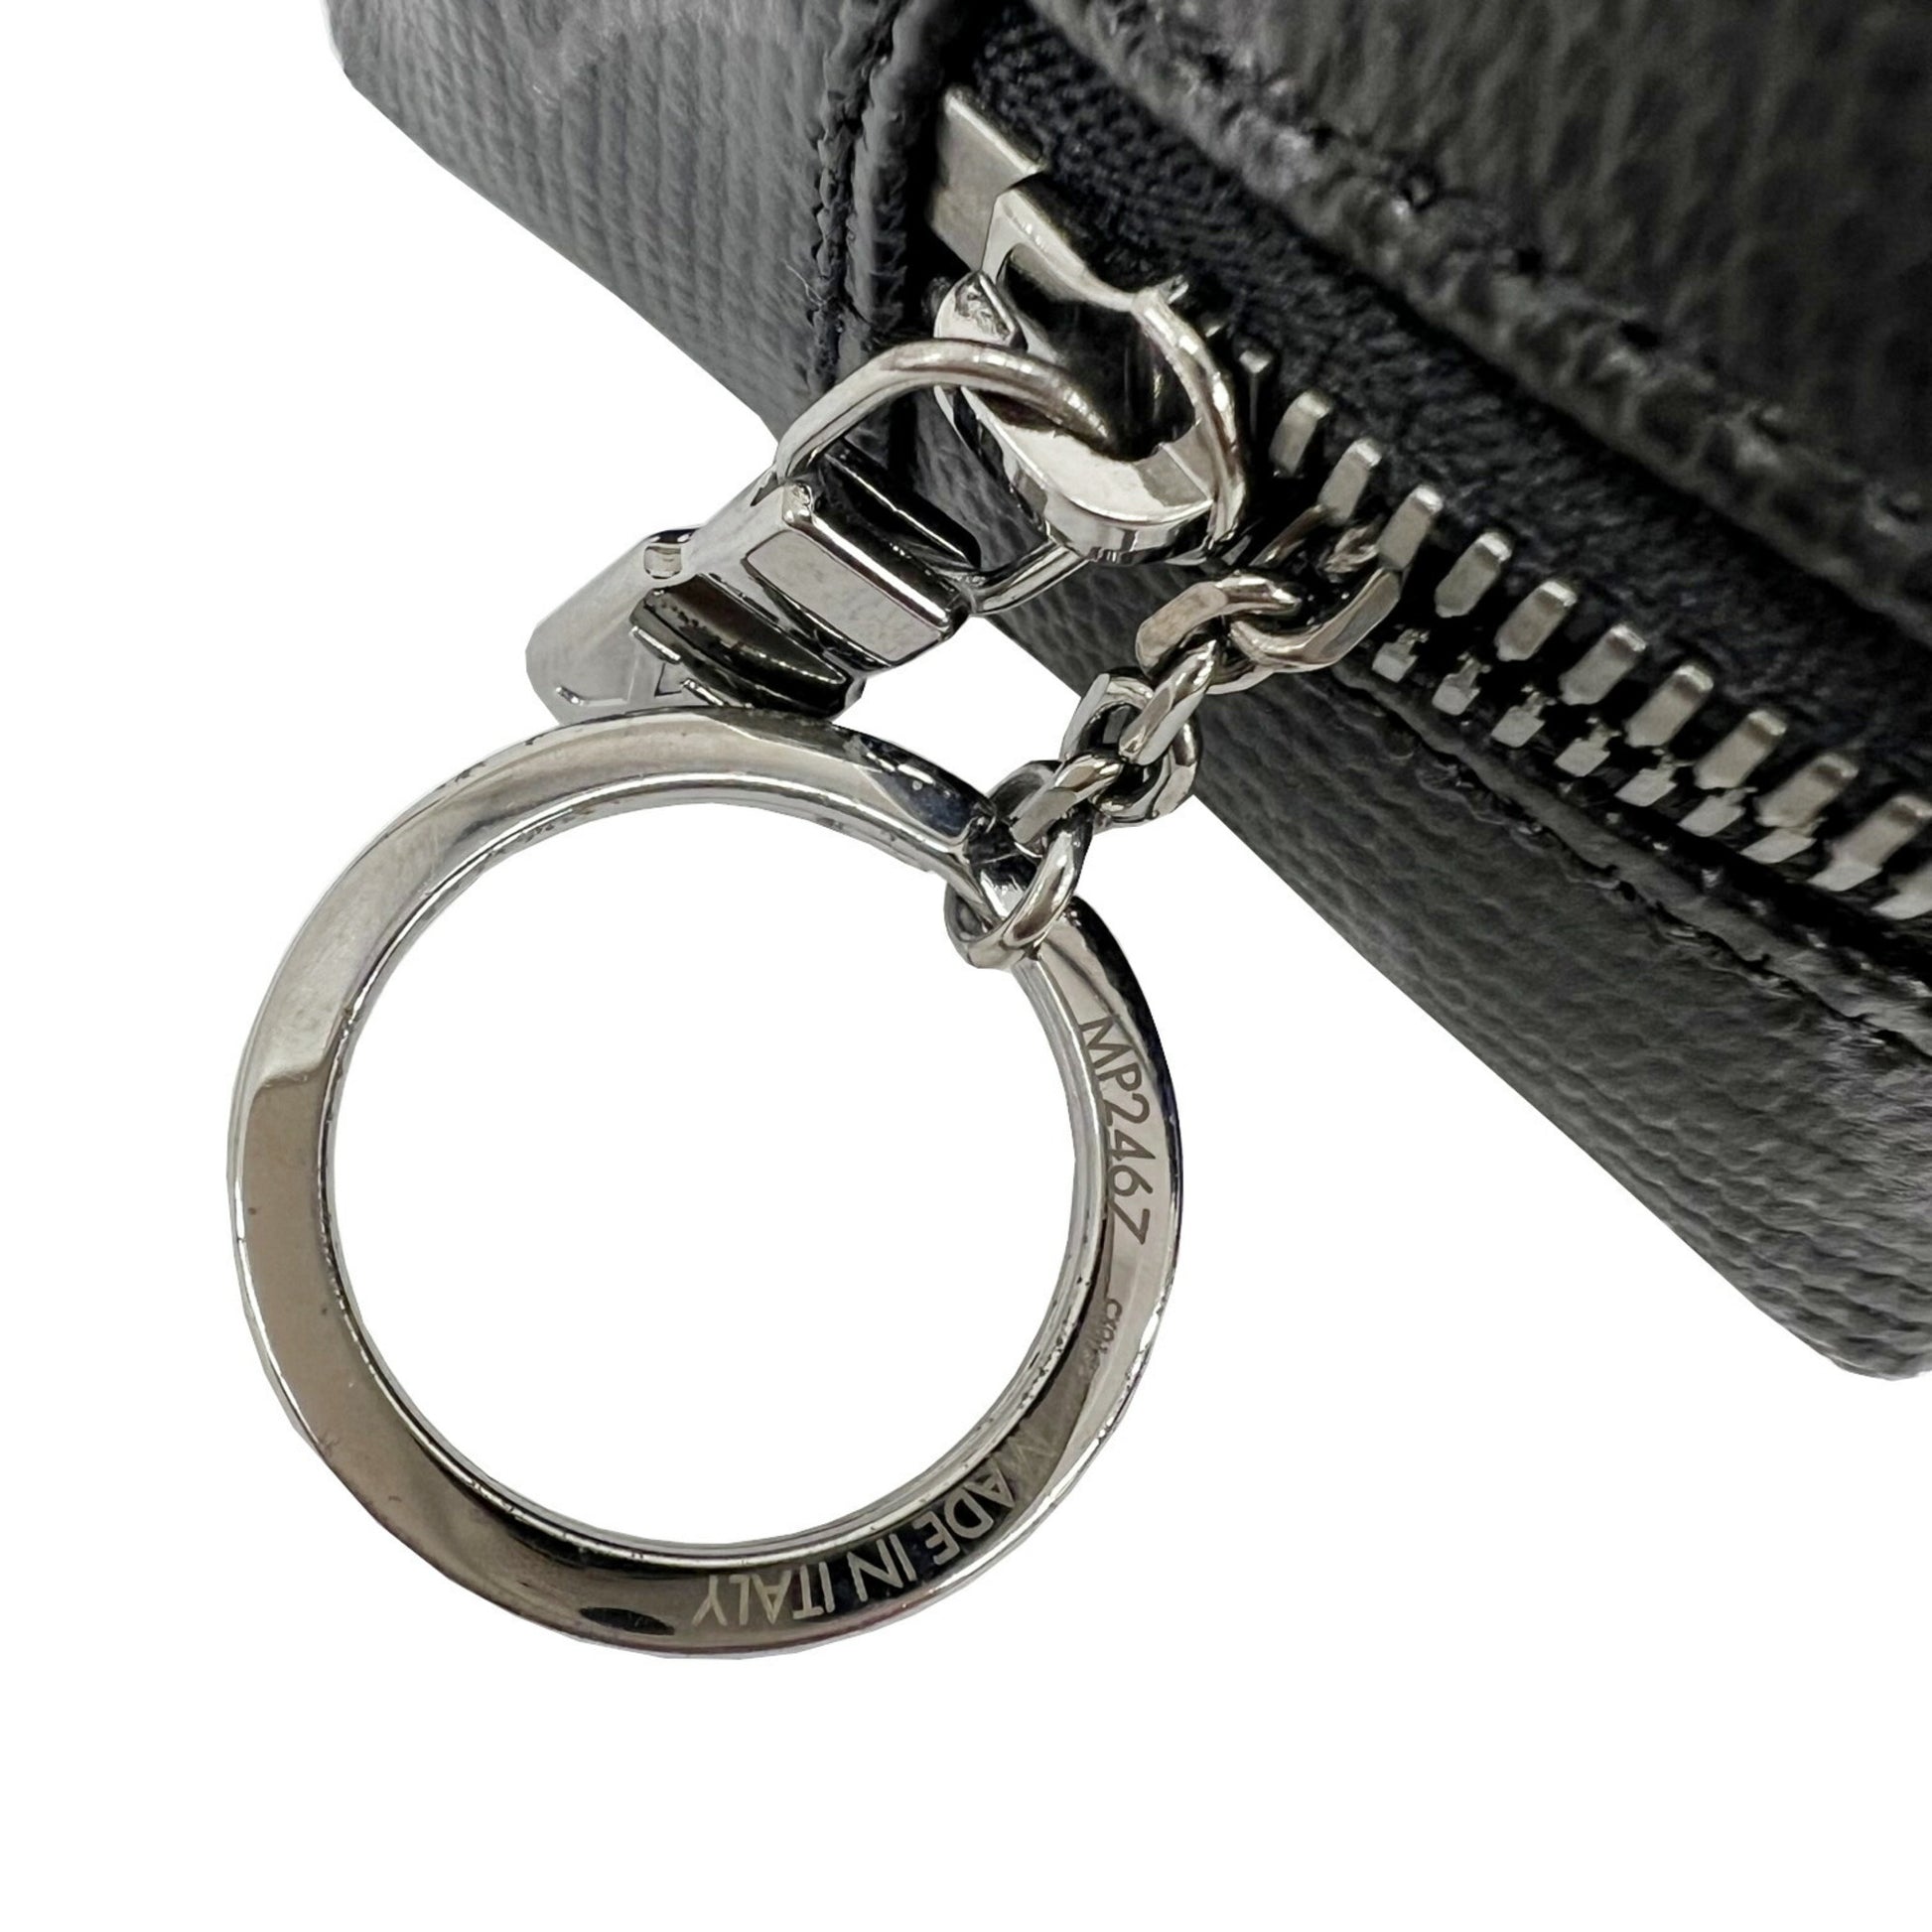 Louis Vuitton LOUIS VUITTON Bijoux Sack Square Pouch MP2467 Shiny Monogram  Eclipse Rainbow Key Ring Bag Charm Belt Waist Men's | eLADY Globazone